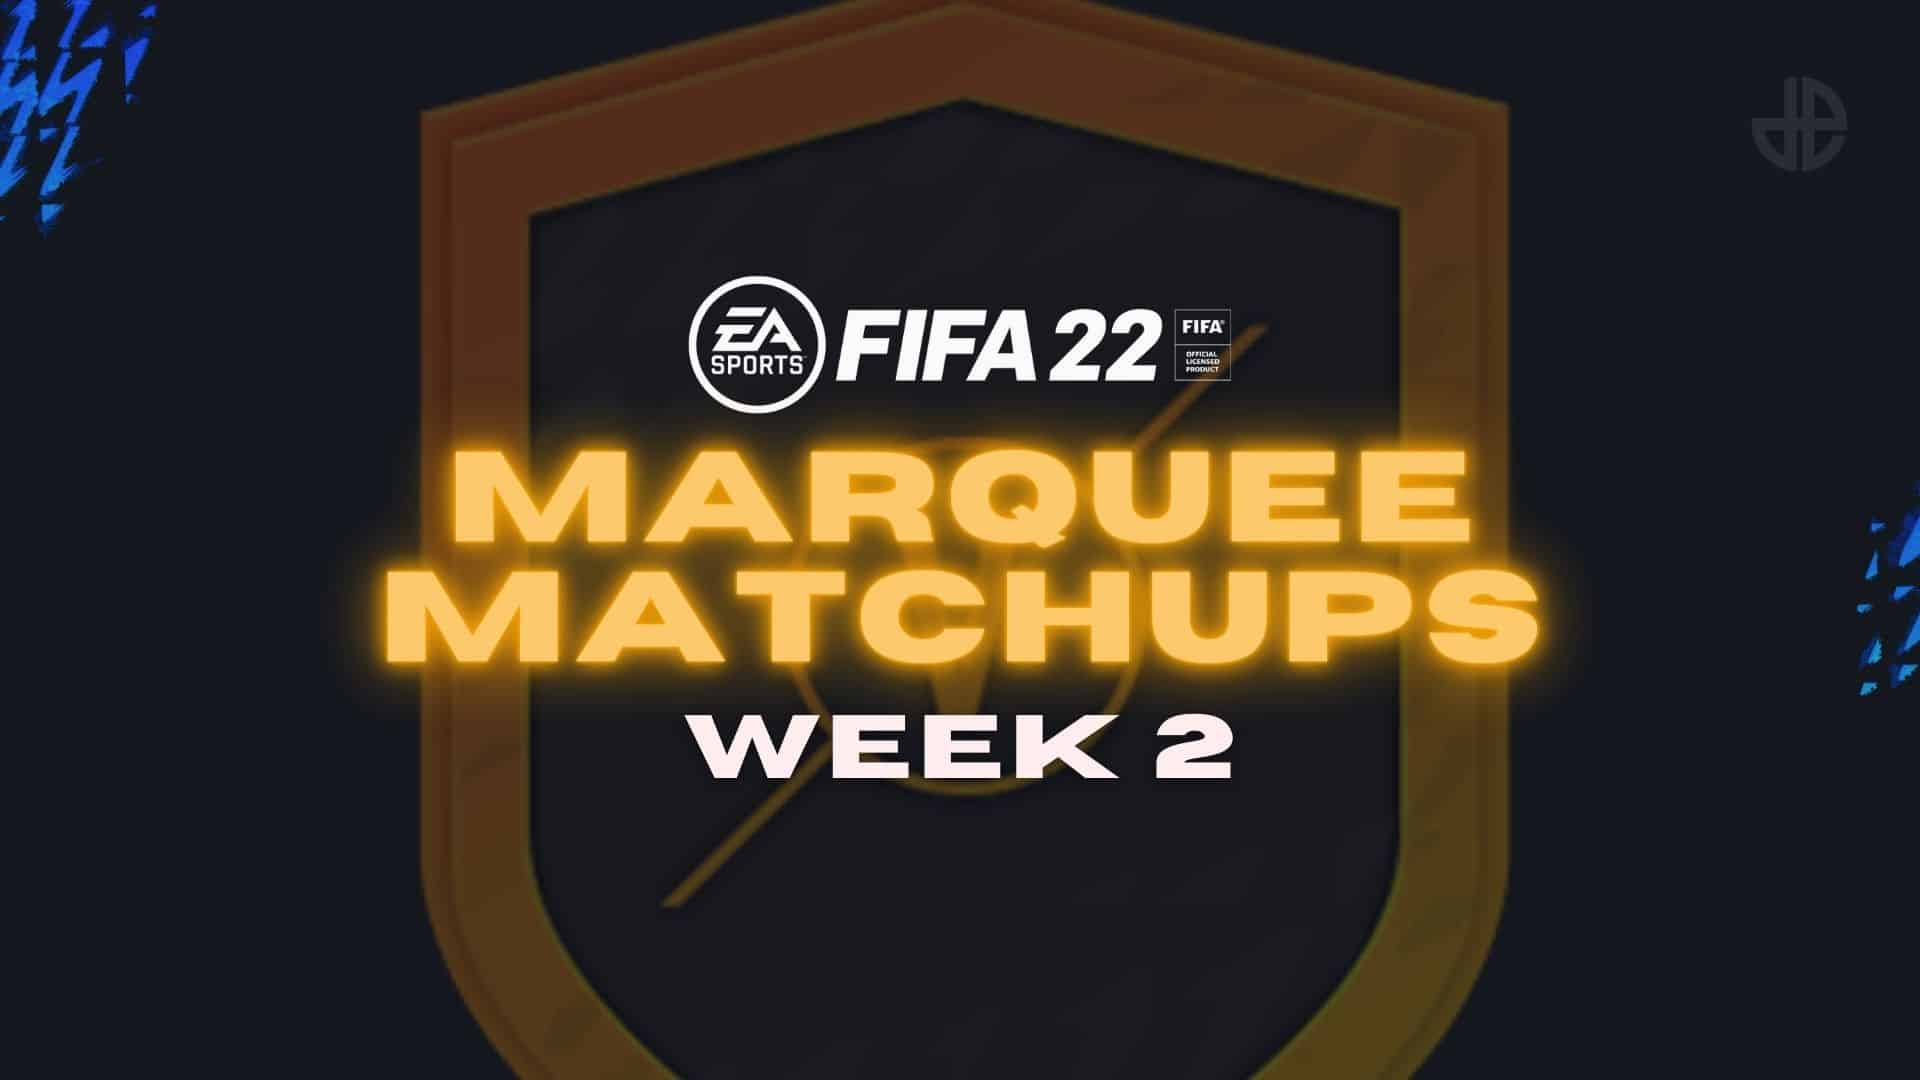 Marquee Matchups Week 2 FIFA 22